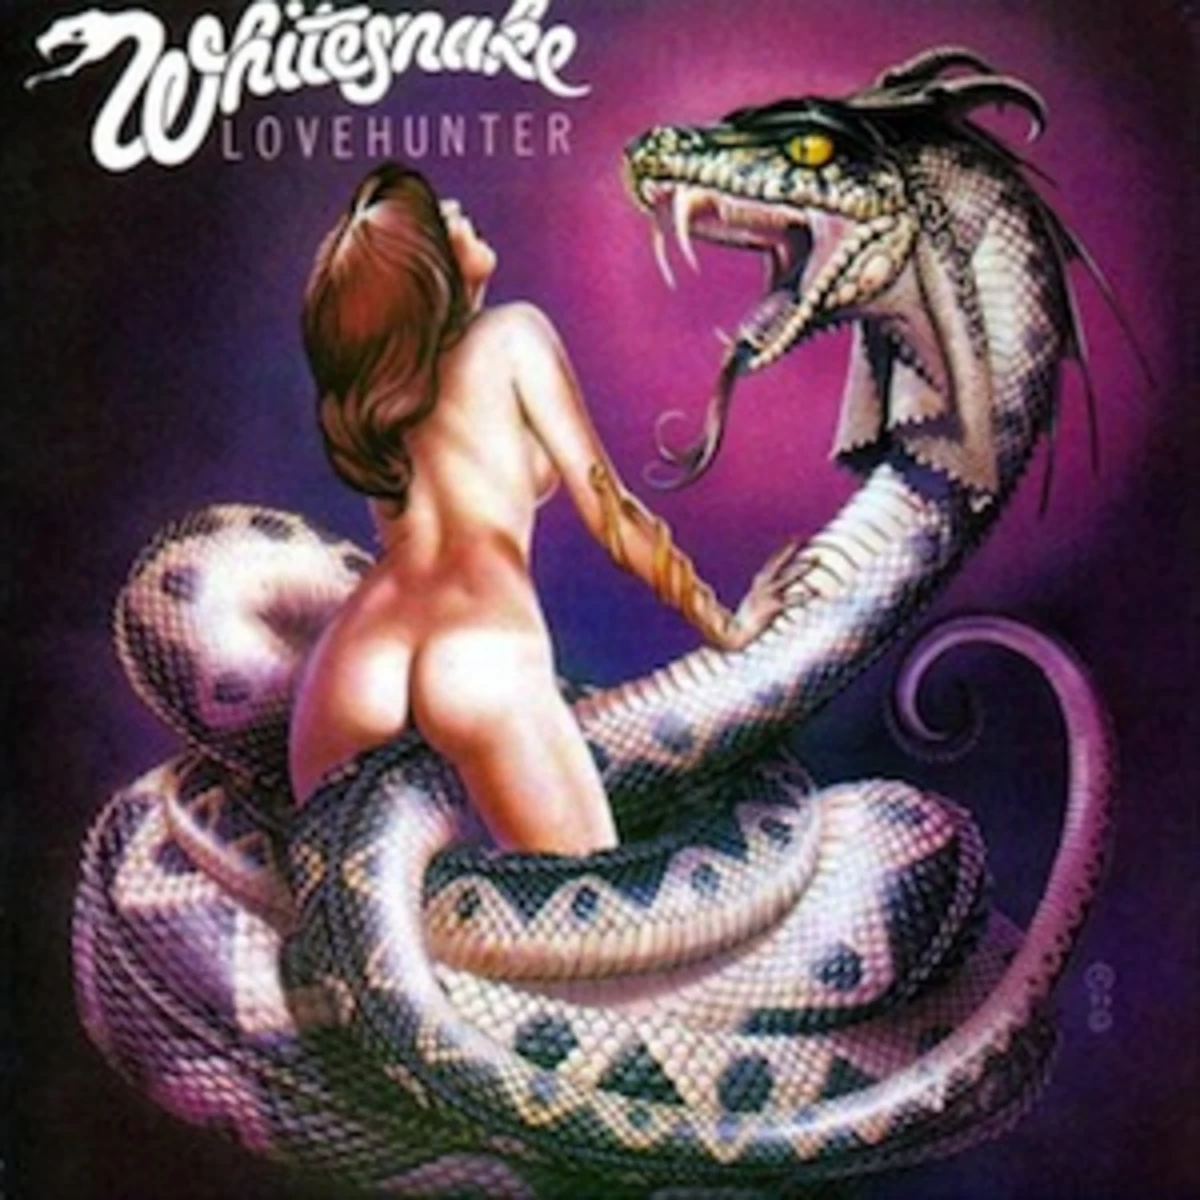 whitesnake album covers